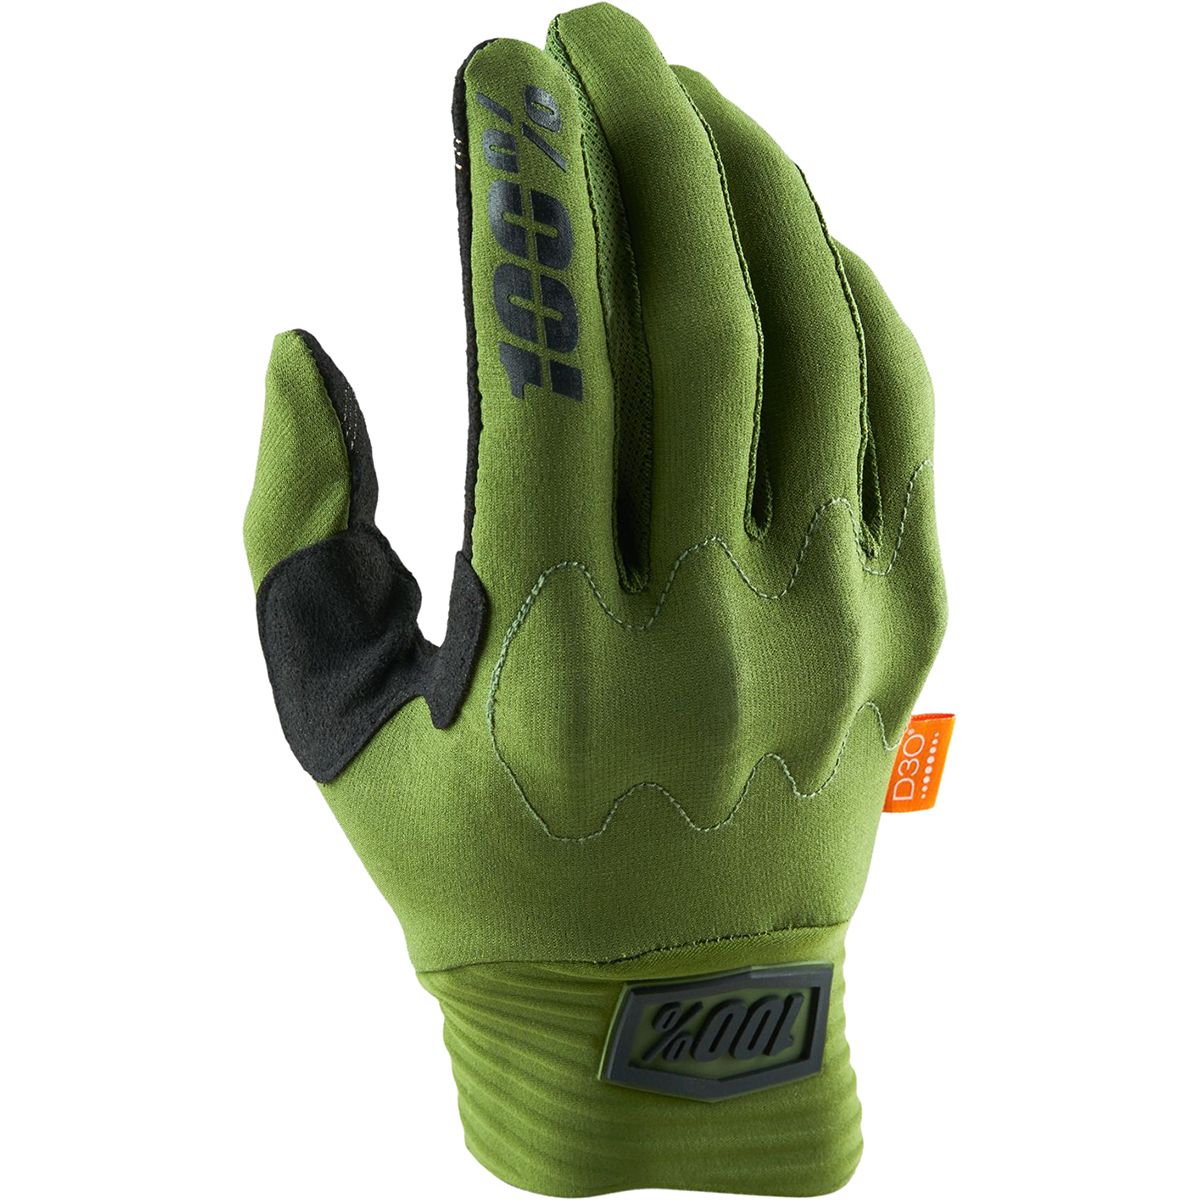 100% Cognito D30 Glove - Men's